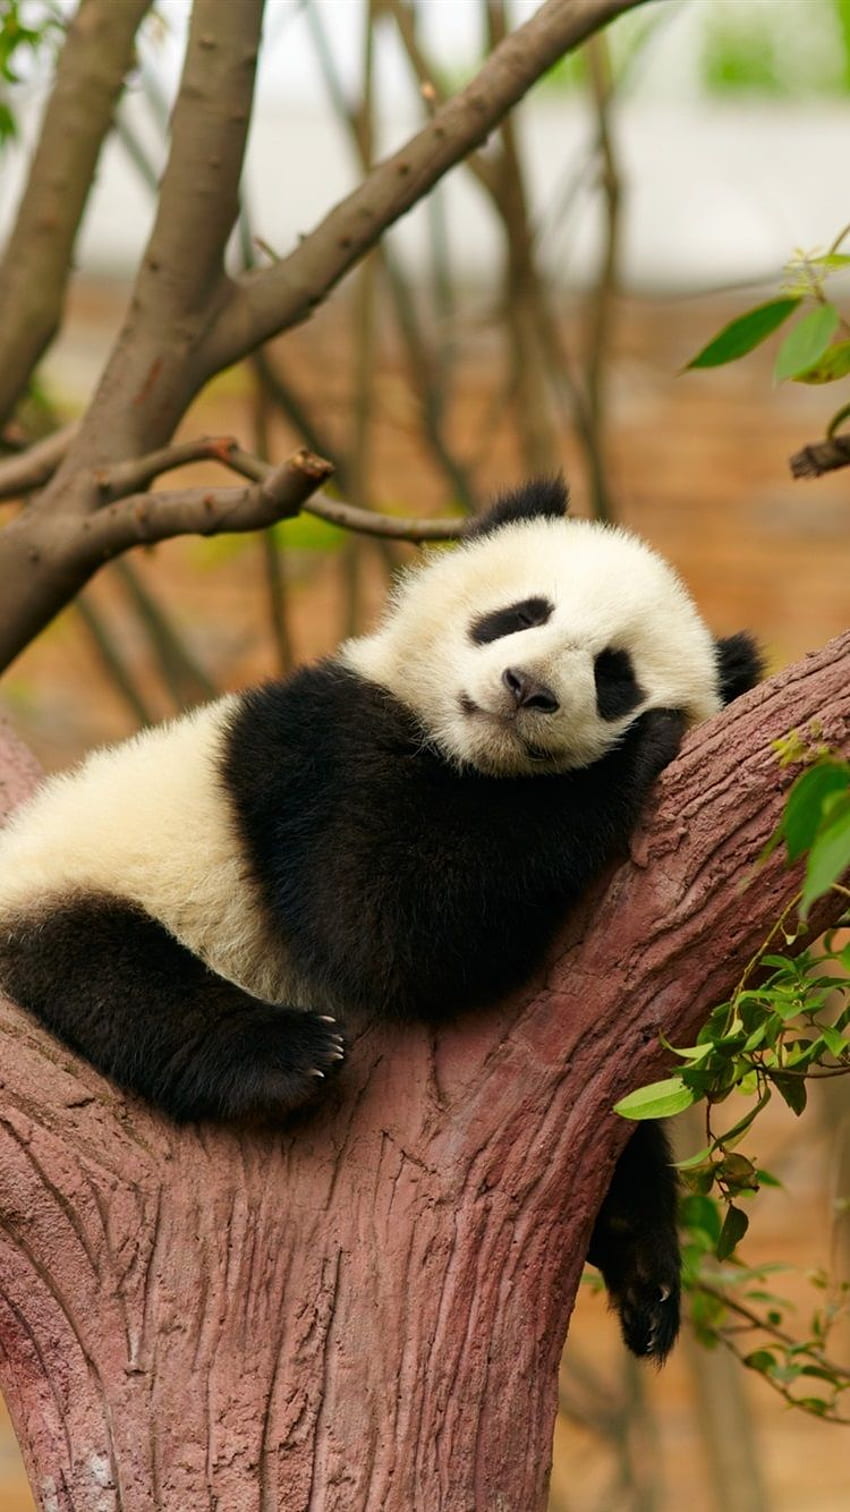 Cute Panda Bear Sleep, Rest, Tree, Zoo IPhone 8 7 6 HD phone wallpaper